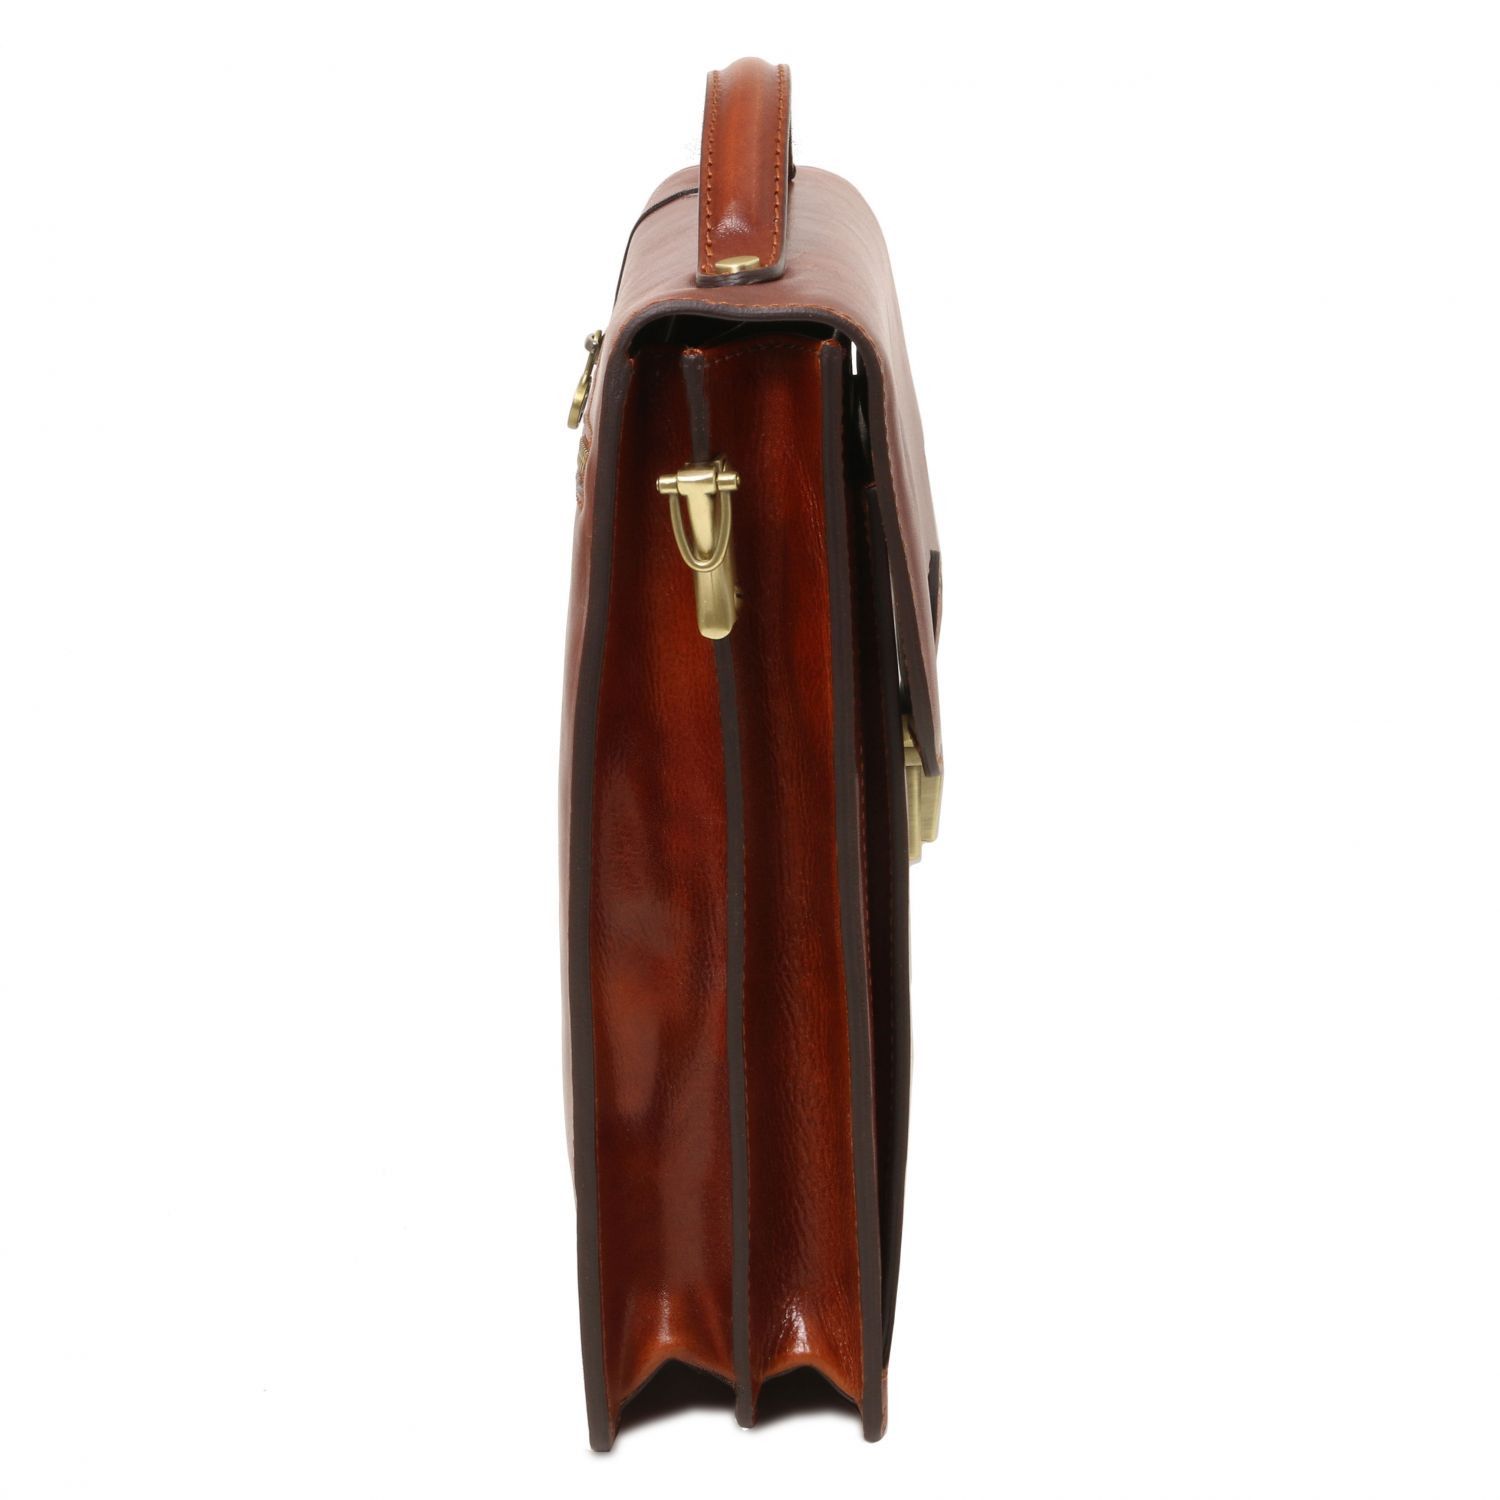 David - Sac bandoulière en cuir pour homme - Grand modèle - Marron (TL141424)